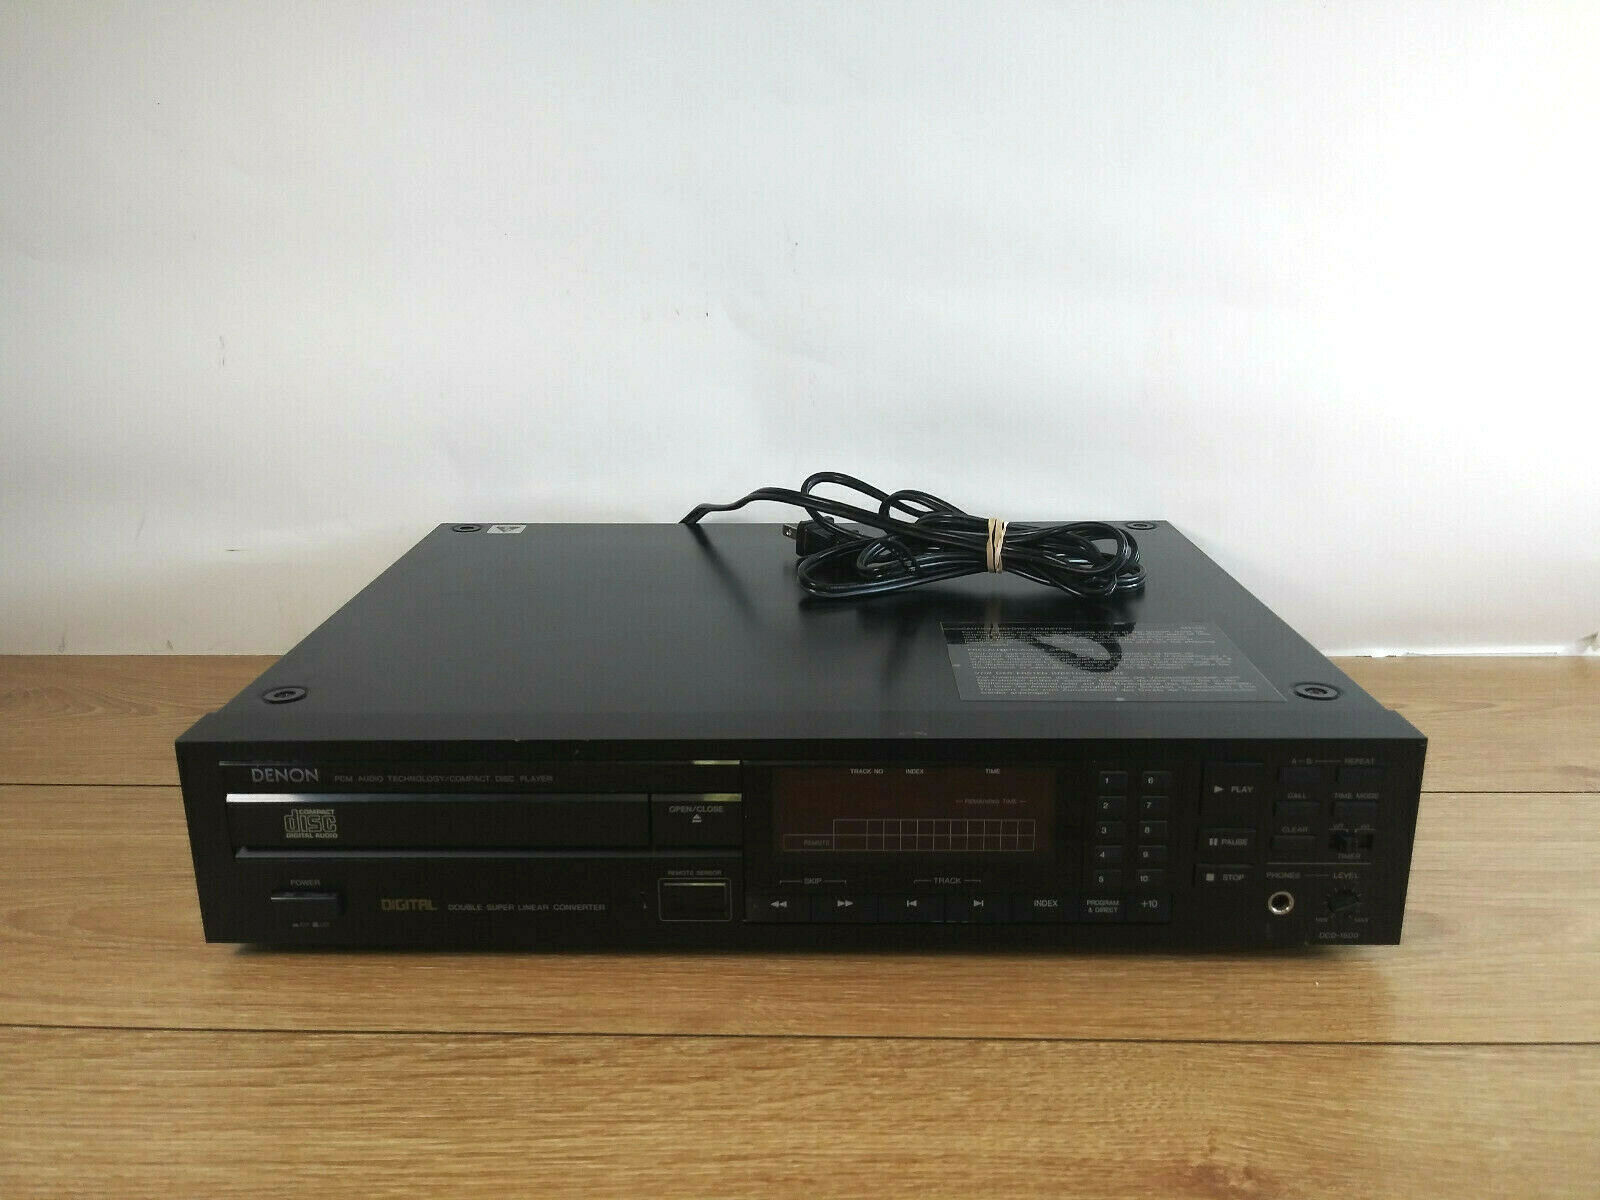 Vintage Denon Dcd-1500 Pcm Audio Technology/compact Disc Player - No Remote